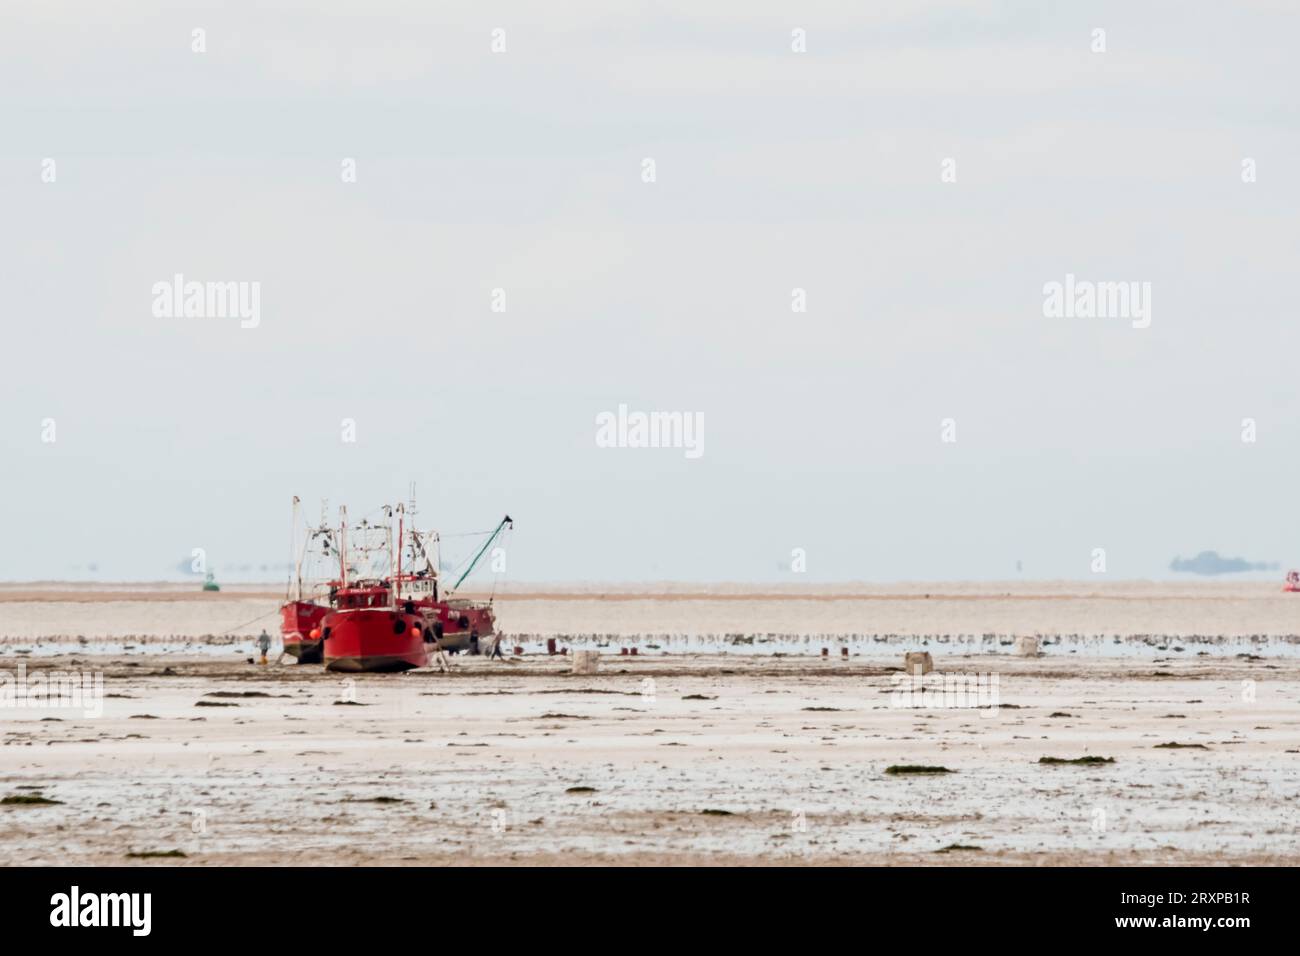 Le barche dei molluschi hanno spiaggiato il Wash per raccogliere i galletti durante la bassa marea. Le barche partono alla prossima alta marea. Foto Stock